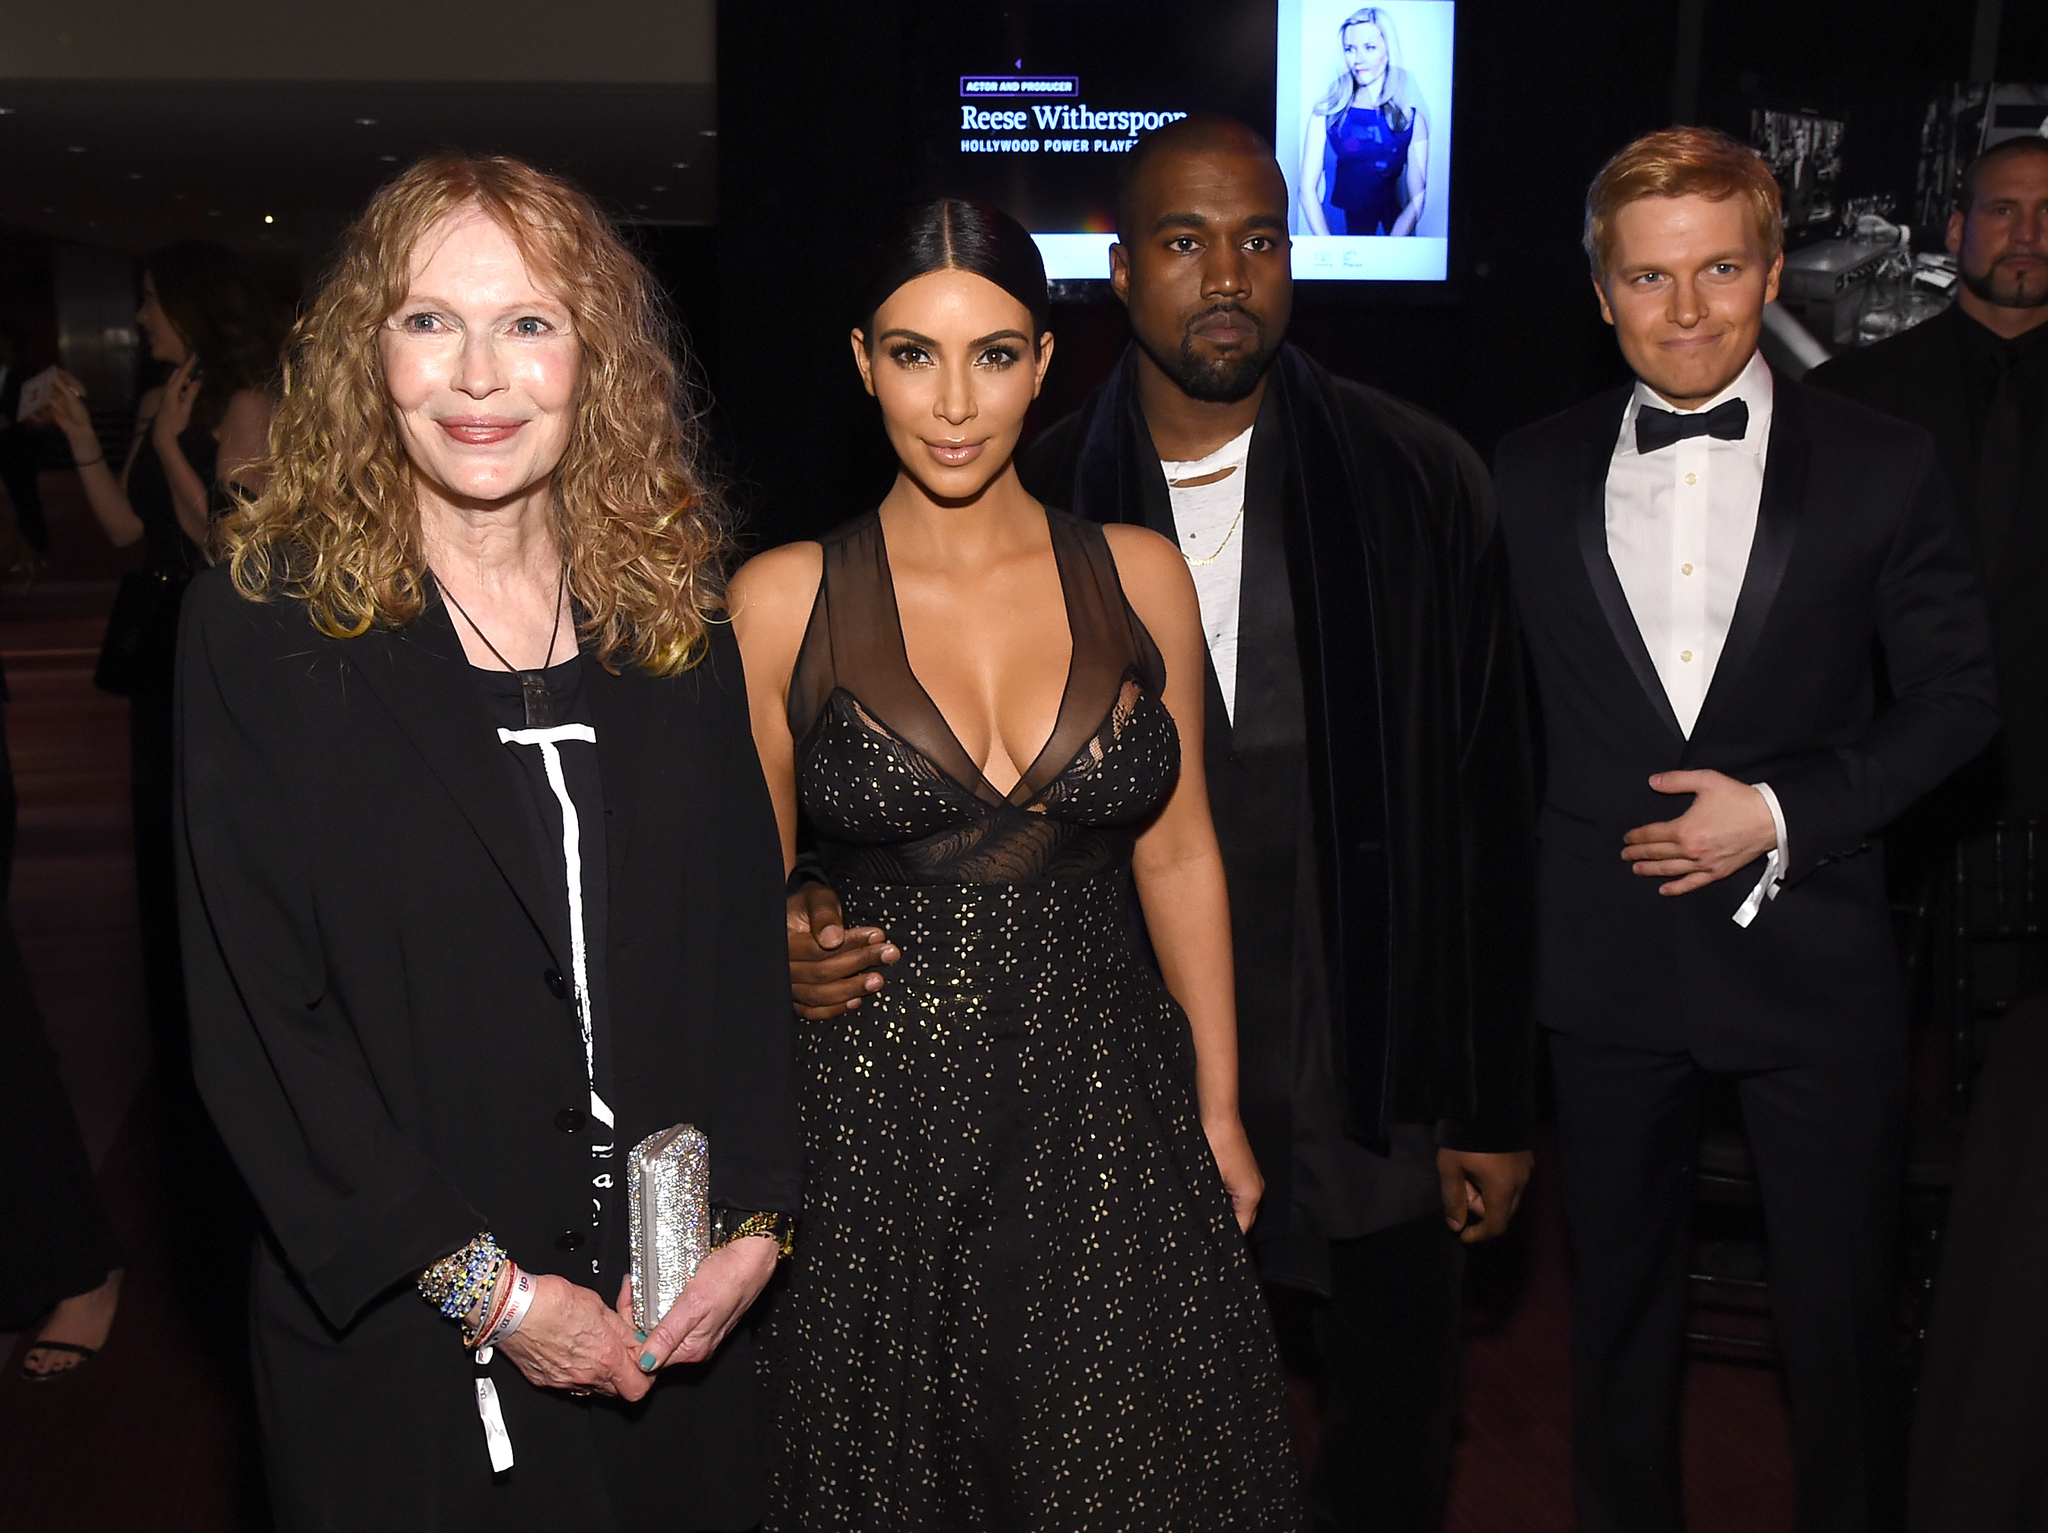 Mia Farrow, Kanye West, Kim Kardashian West and Ronan Farrow